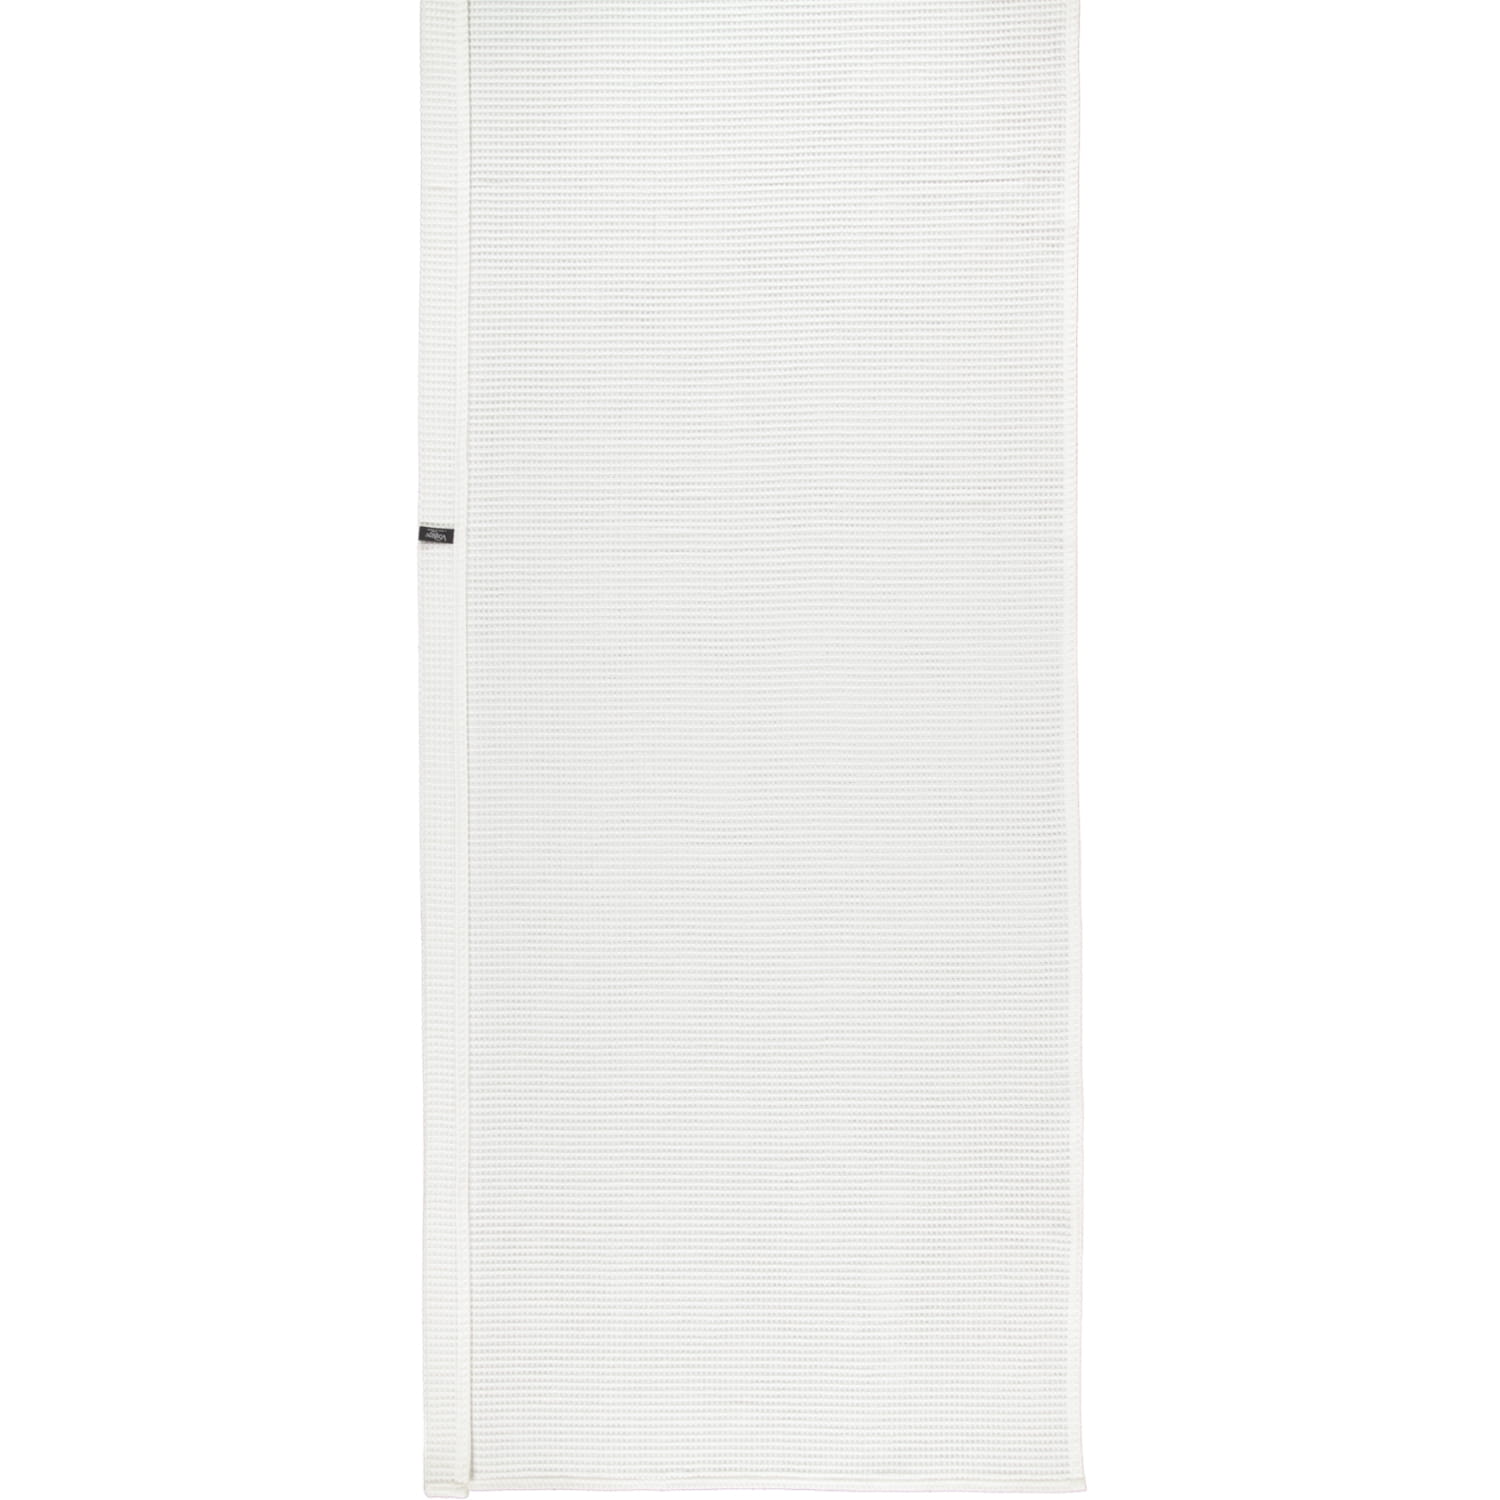 Vossen Saunatuch Pique Rom - 80x220 cm - Farbe: weiß - 030 (116729) |  Saunatuch | Sauna